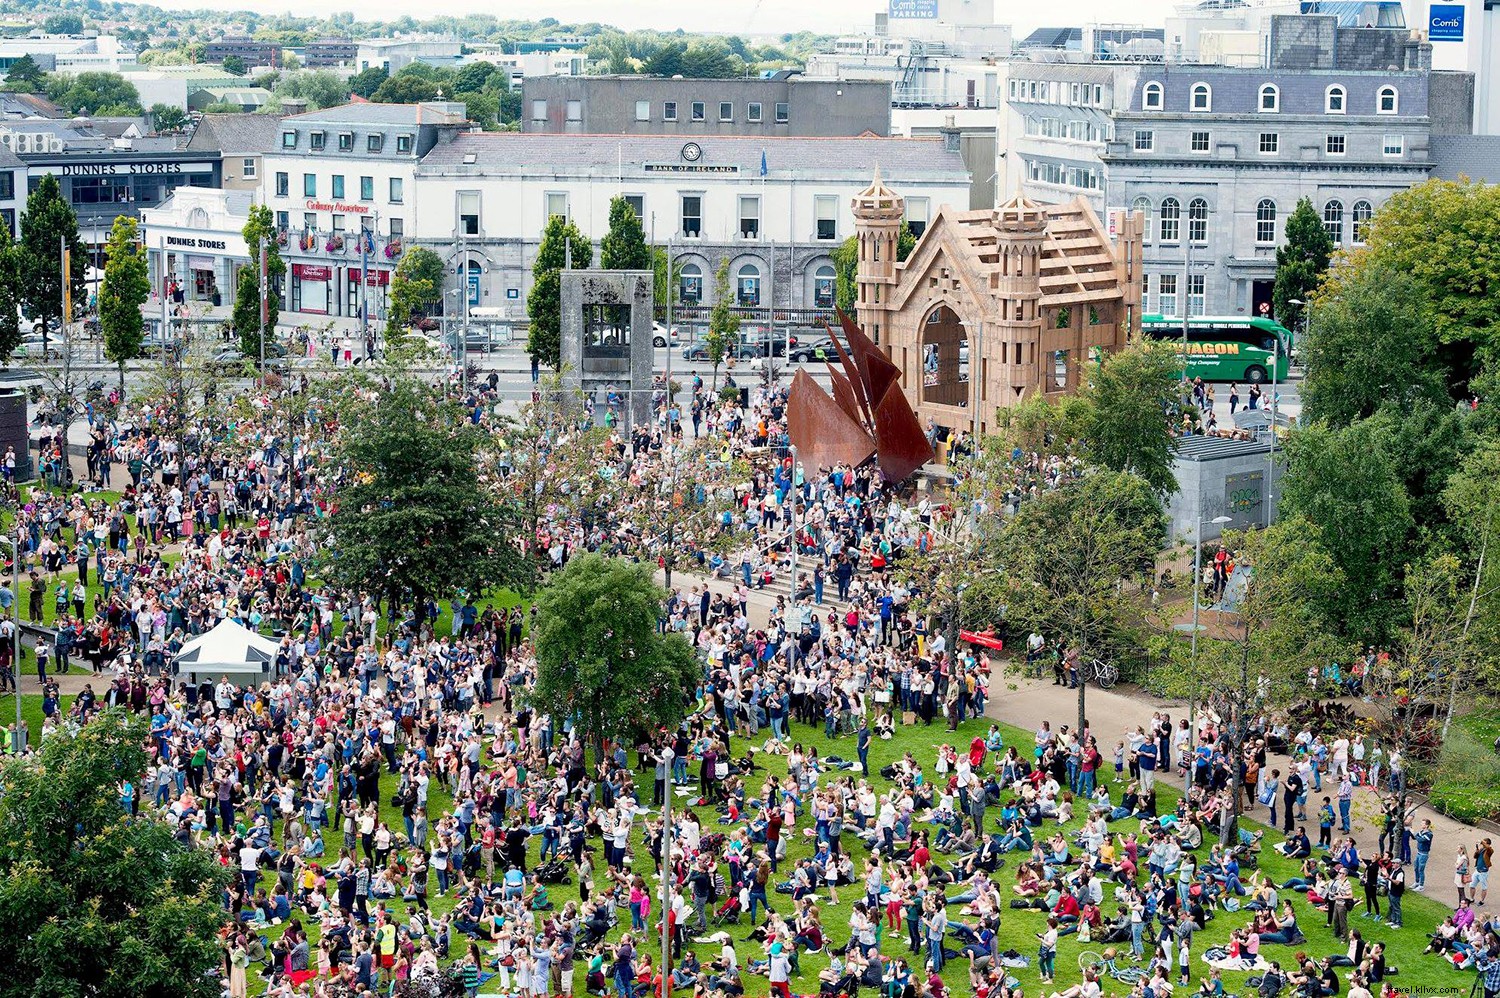 8 cose che devi sapere sul Galway International Arts Festival 